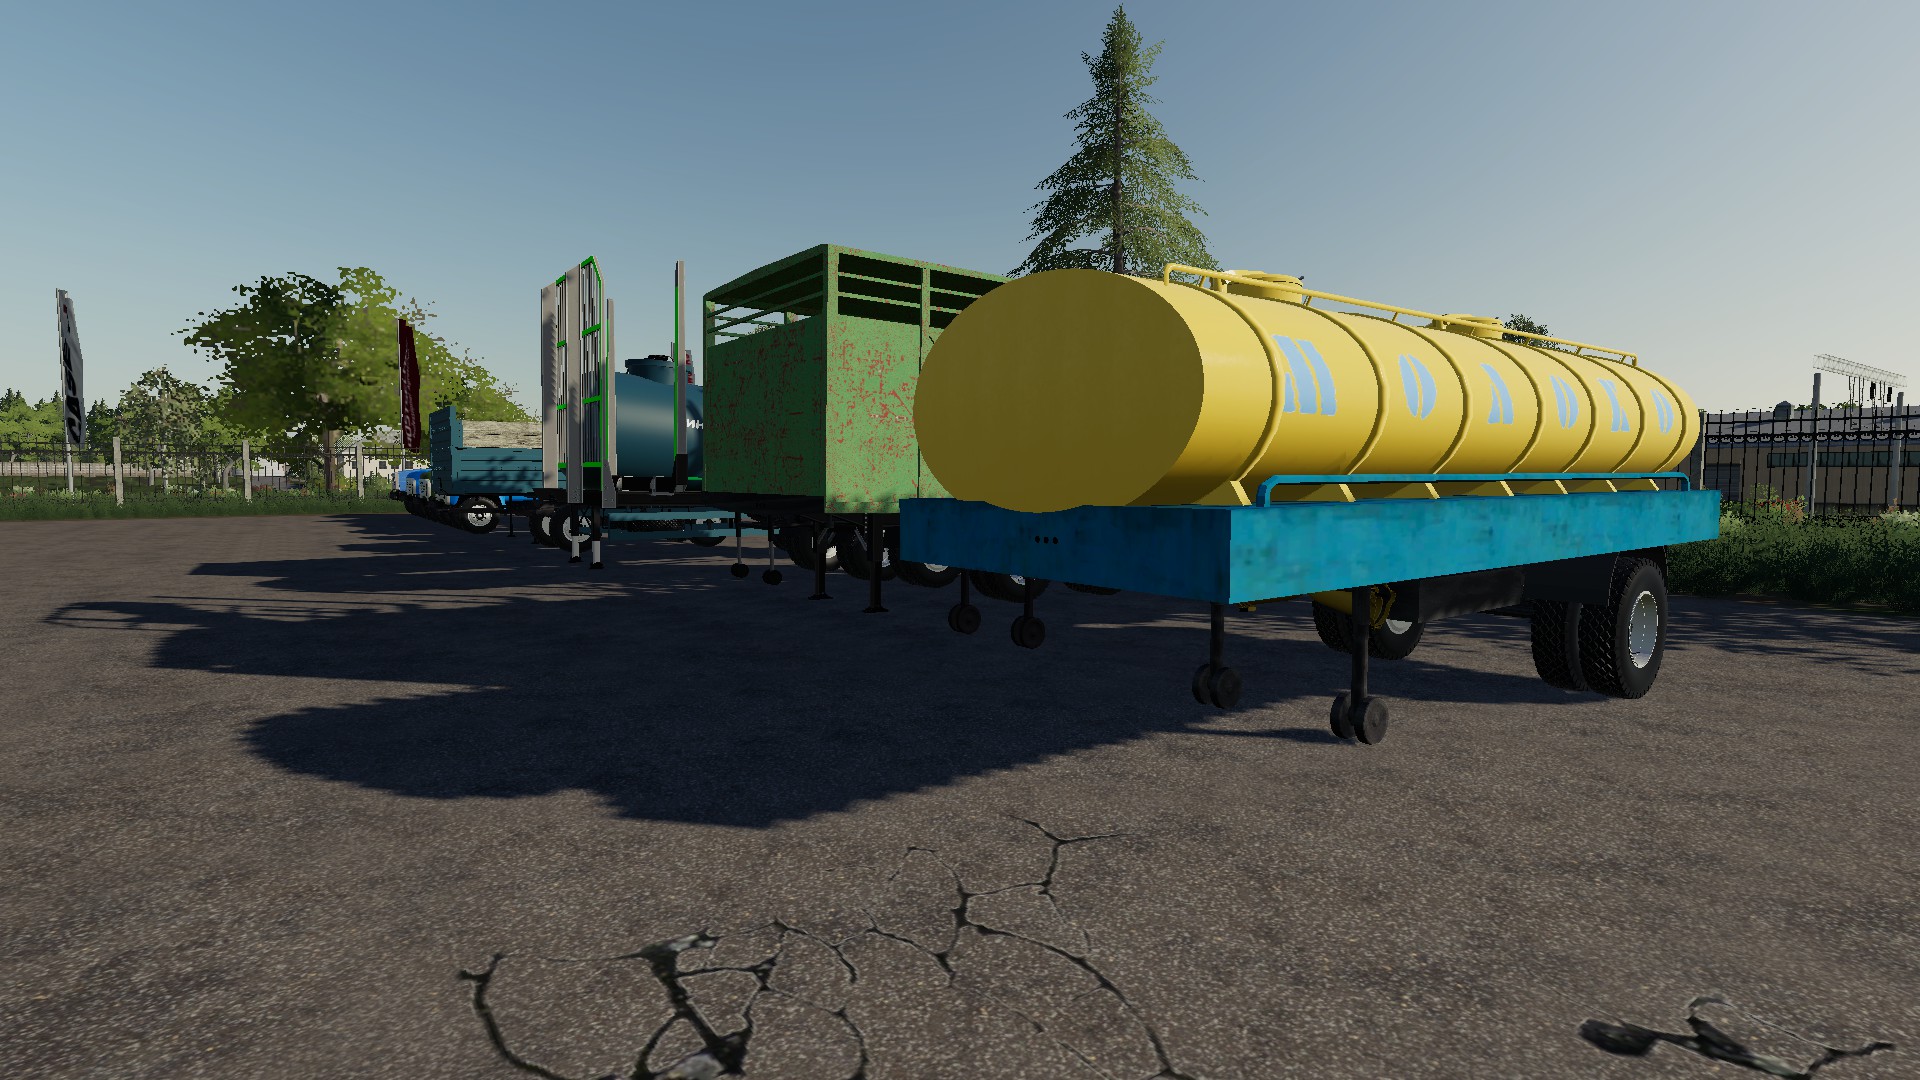 Мод Пaк ЗиЛoв V39 для Farming Simulator 2019 Fs 19 Машины грузовые